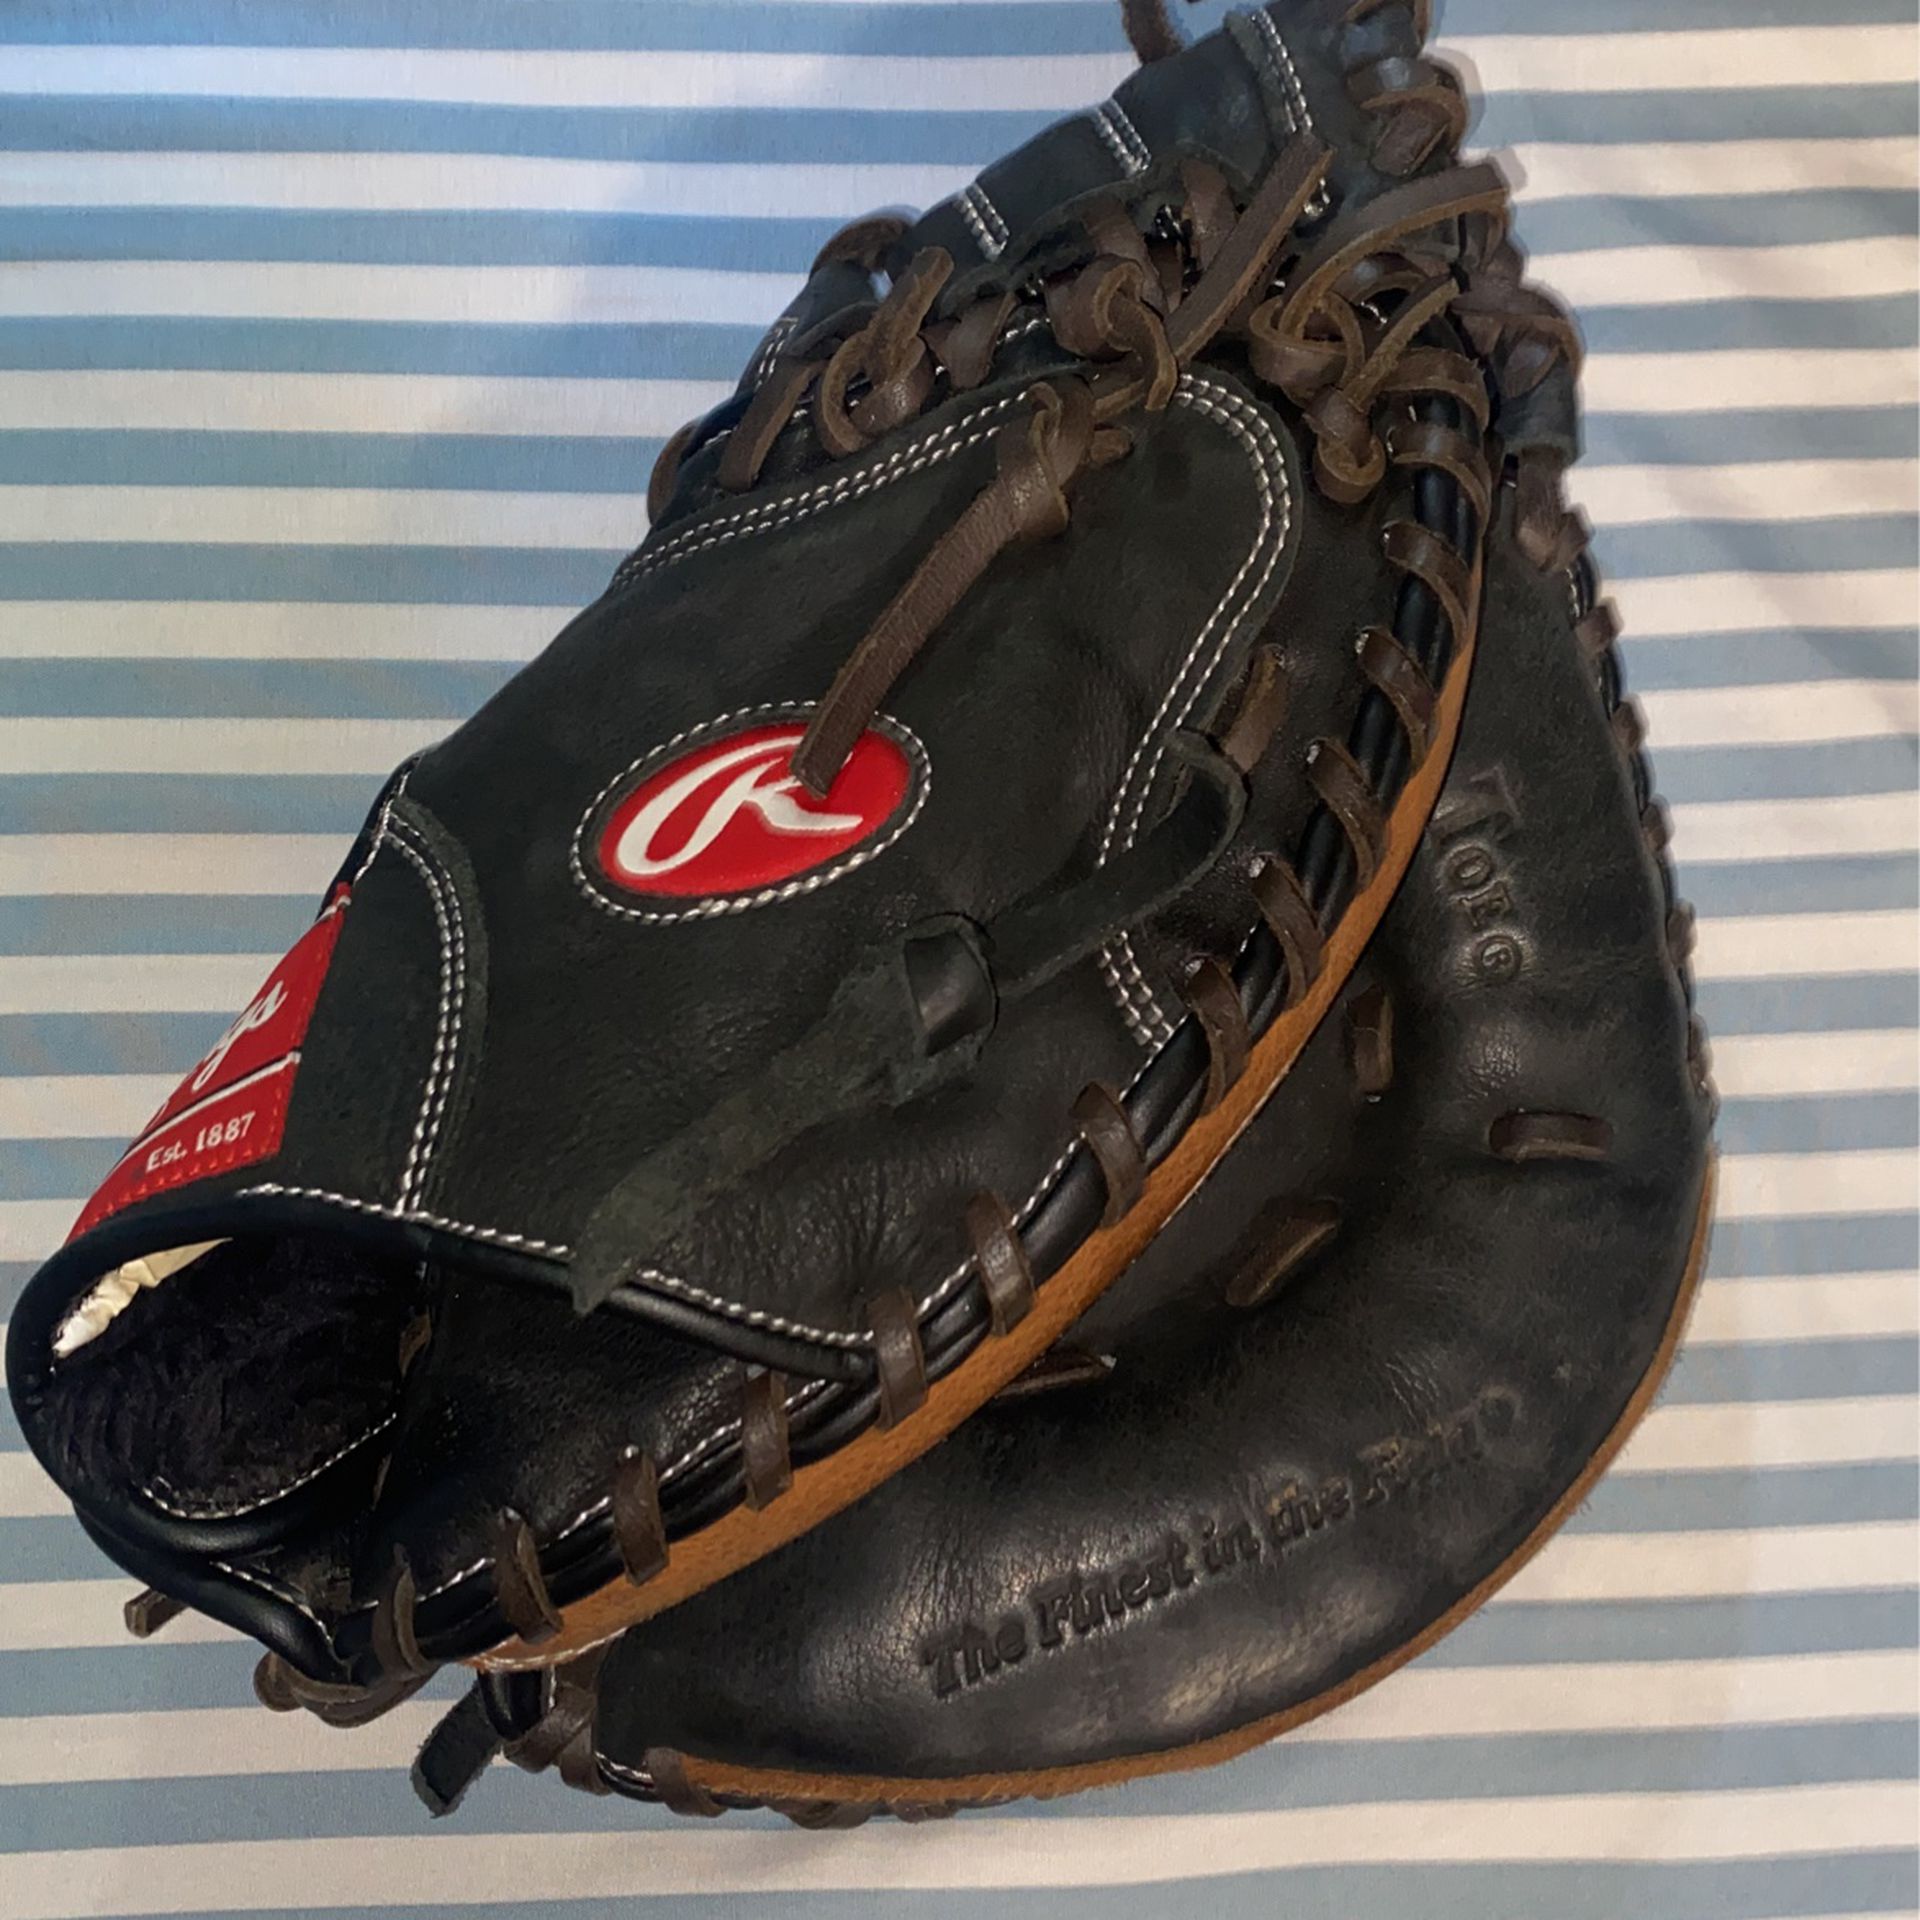 Rawlings Baseball Catchers Glove 